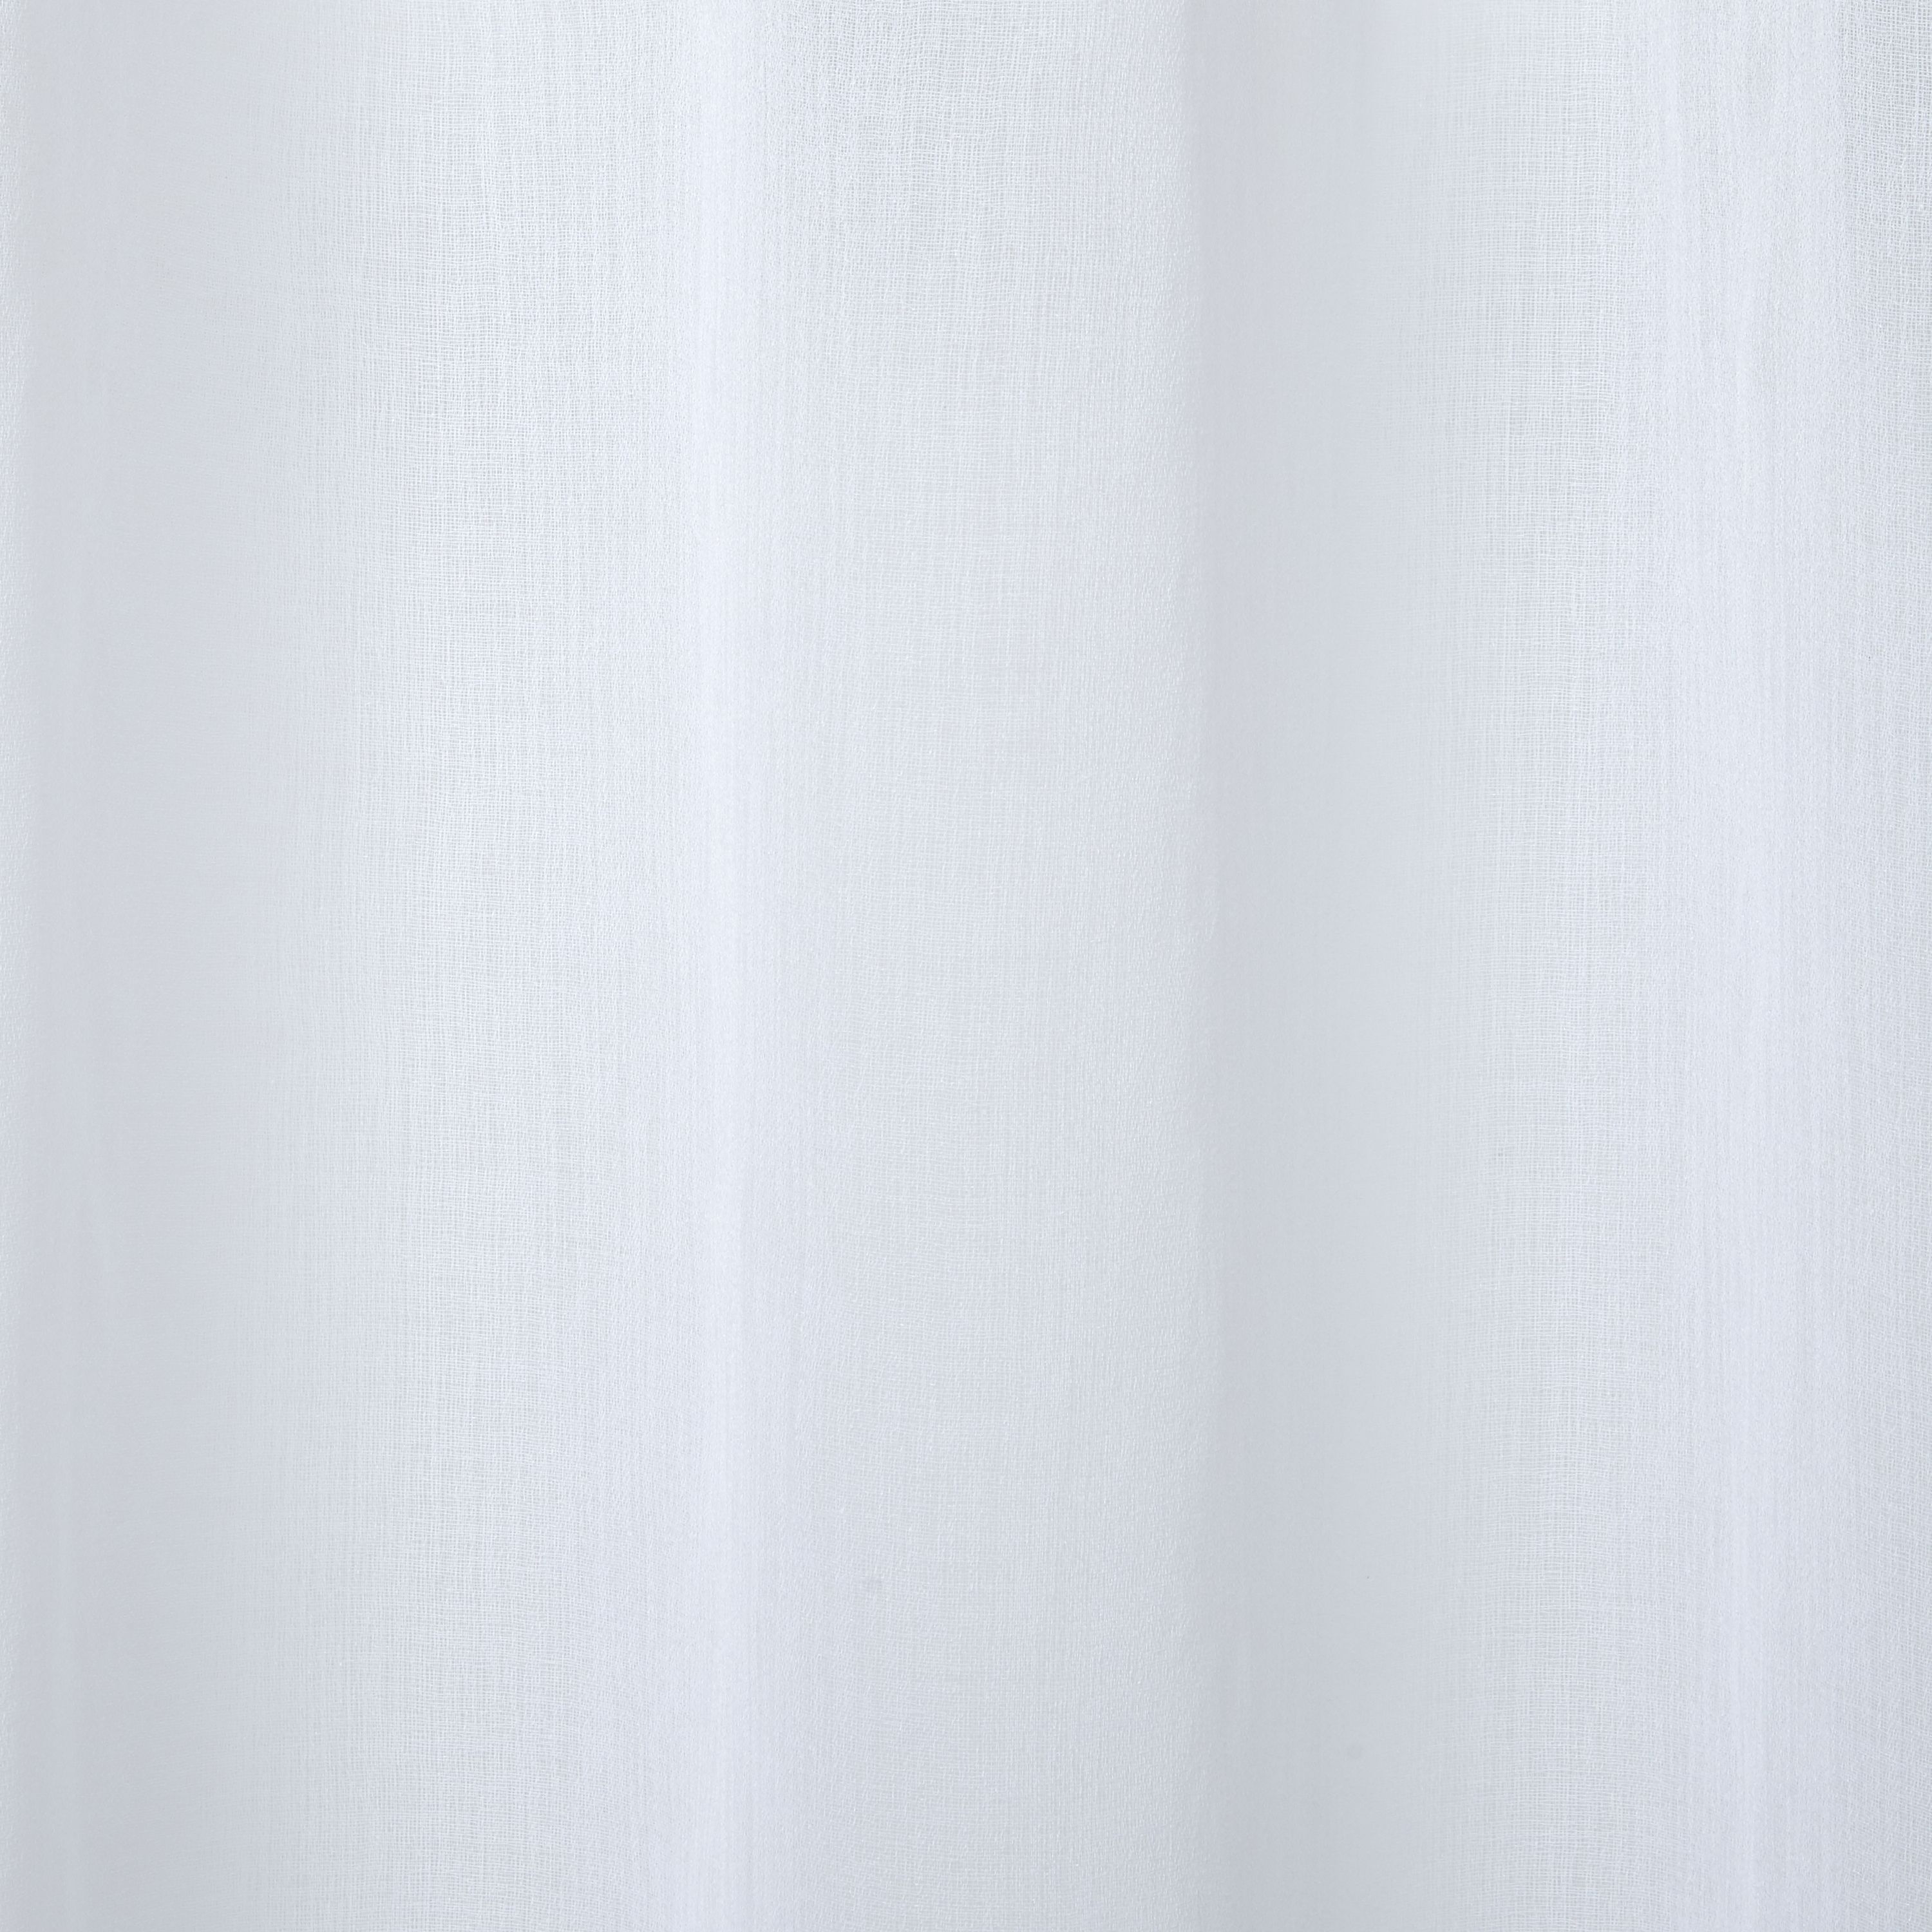 Yena White Plain Unlined Eyelet Voile curtain (W)140cm (L)260cm, Single